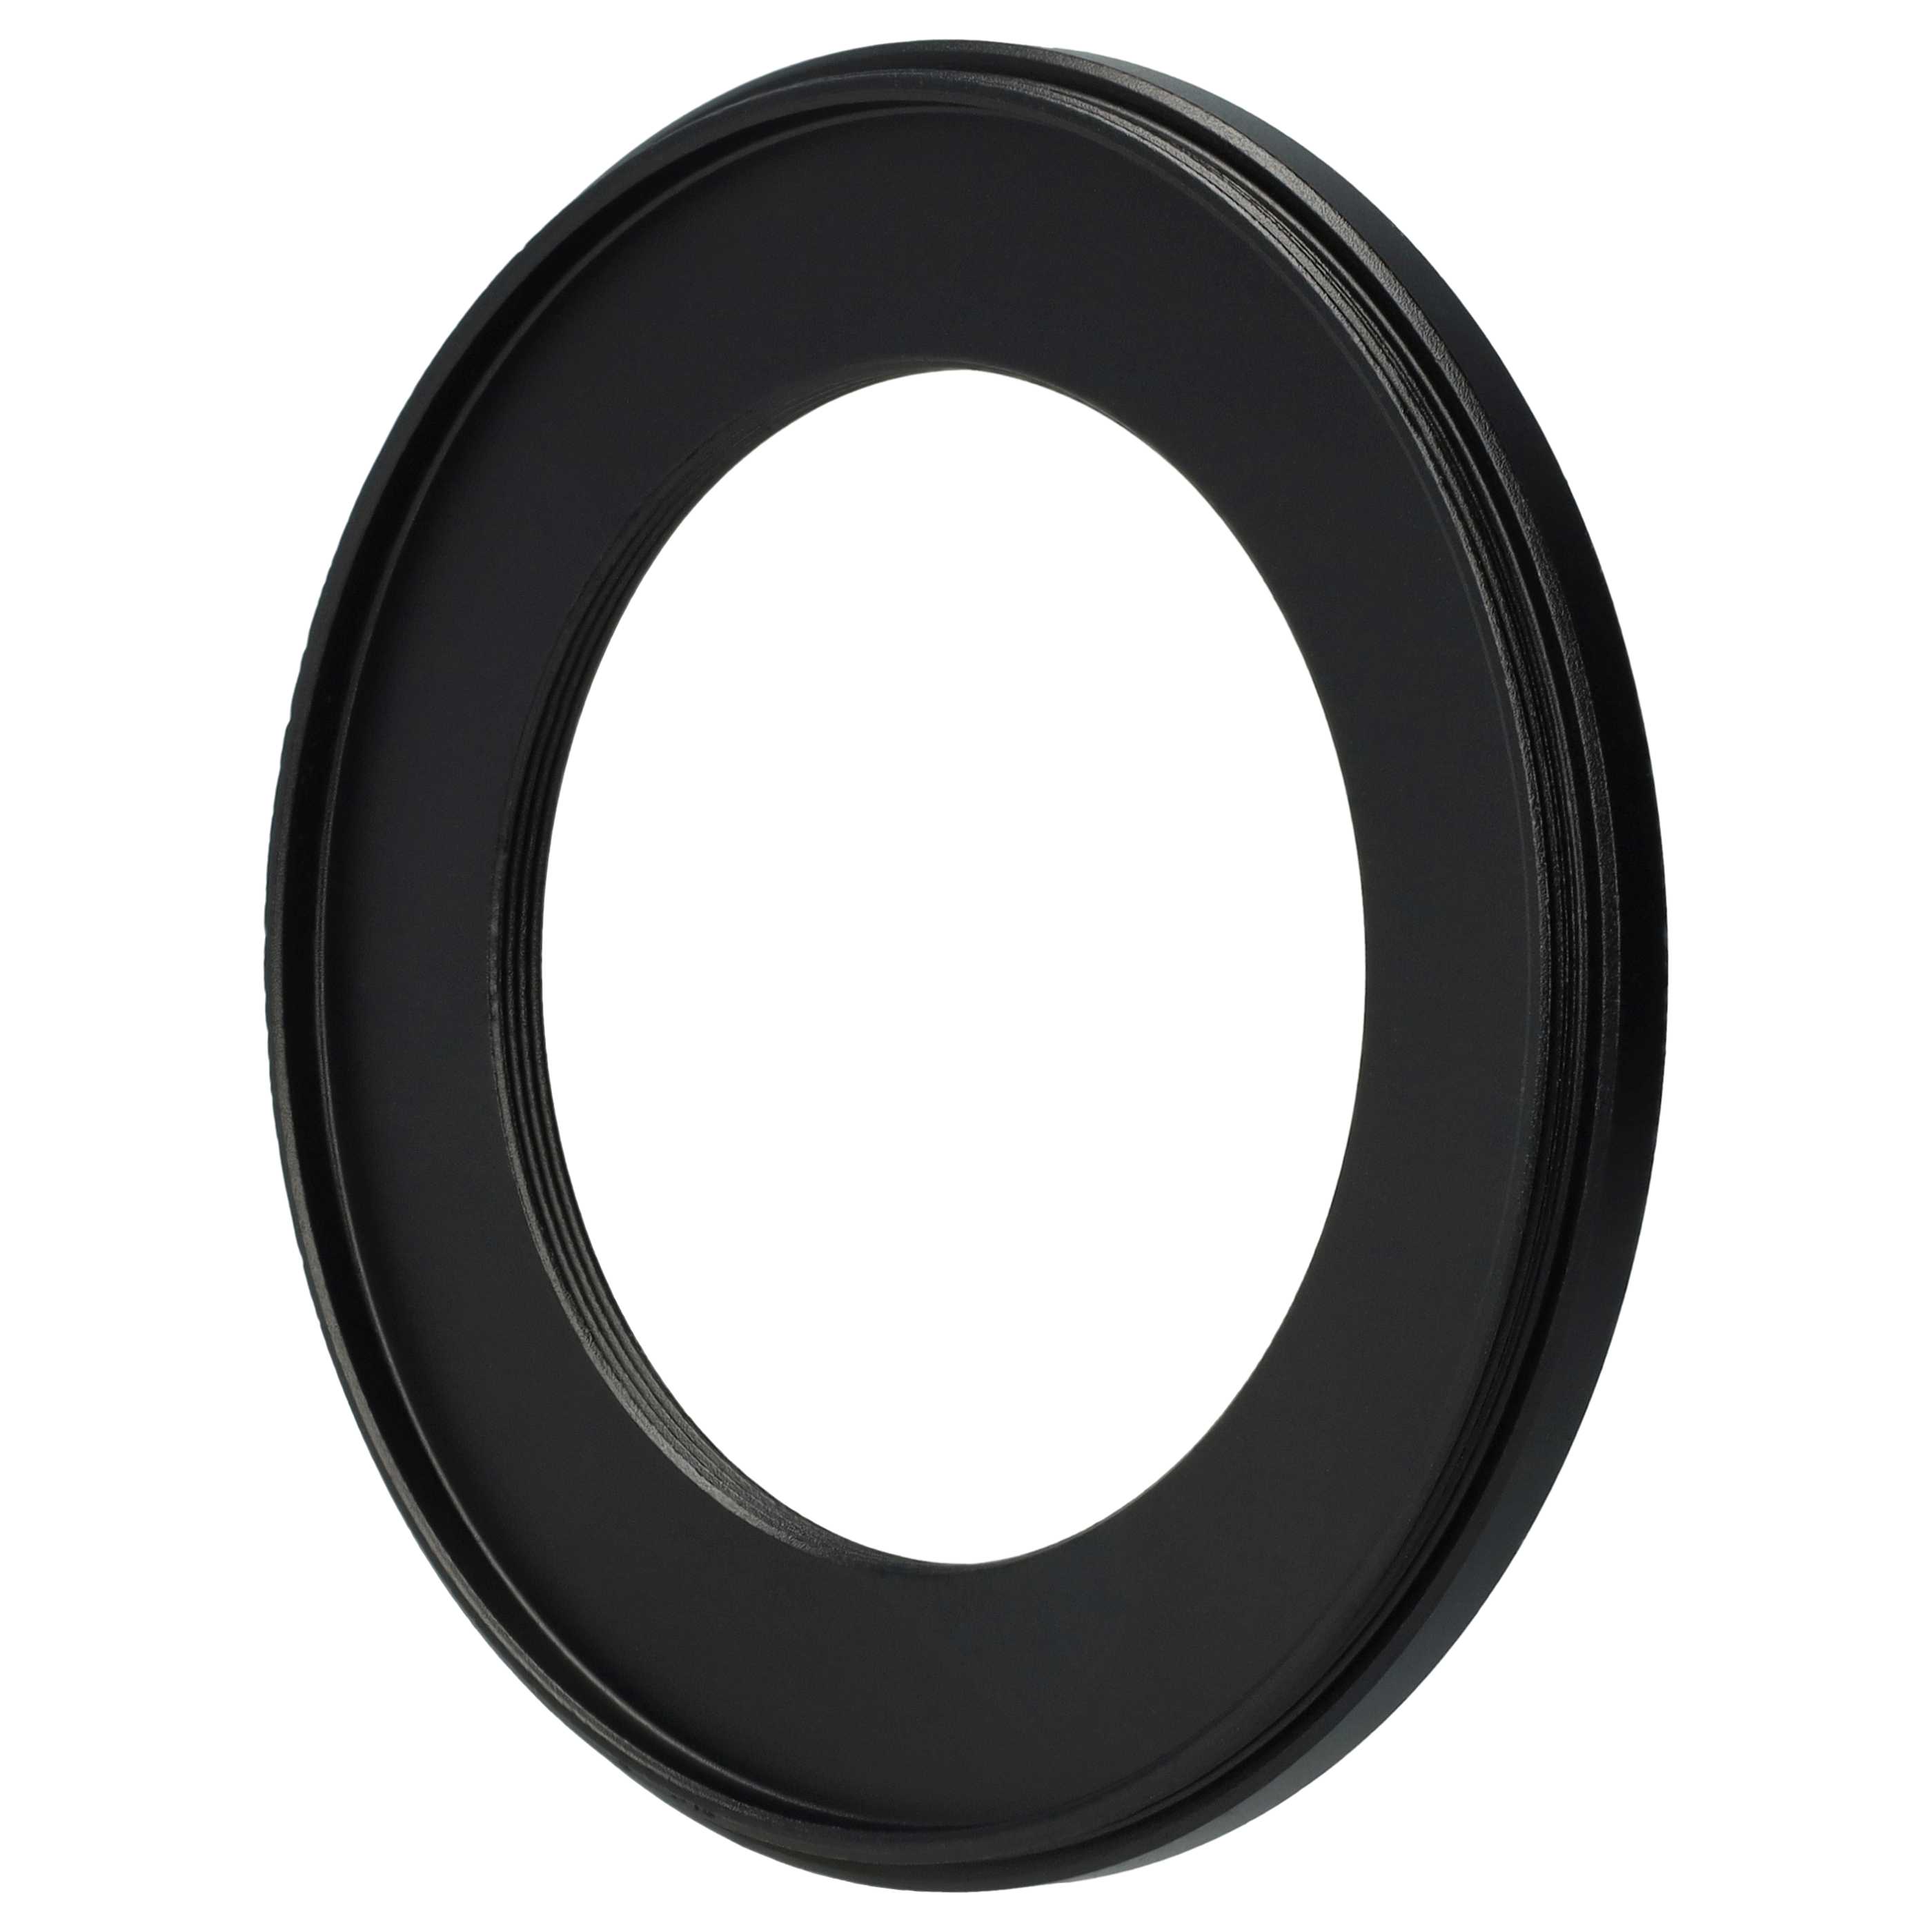 Anillo adaptador Step Down de 77 mm a 52 mm para objetivo de la cámara - Adaptador de filtro, metal, negro